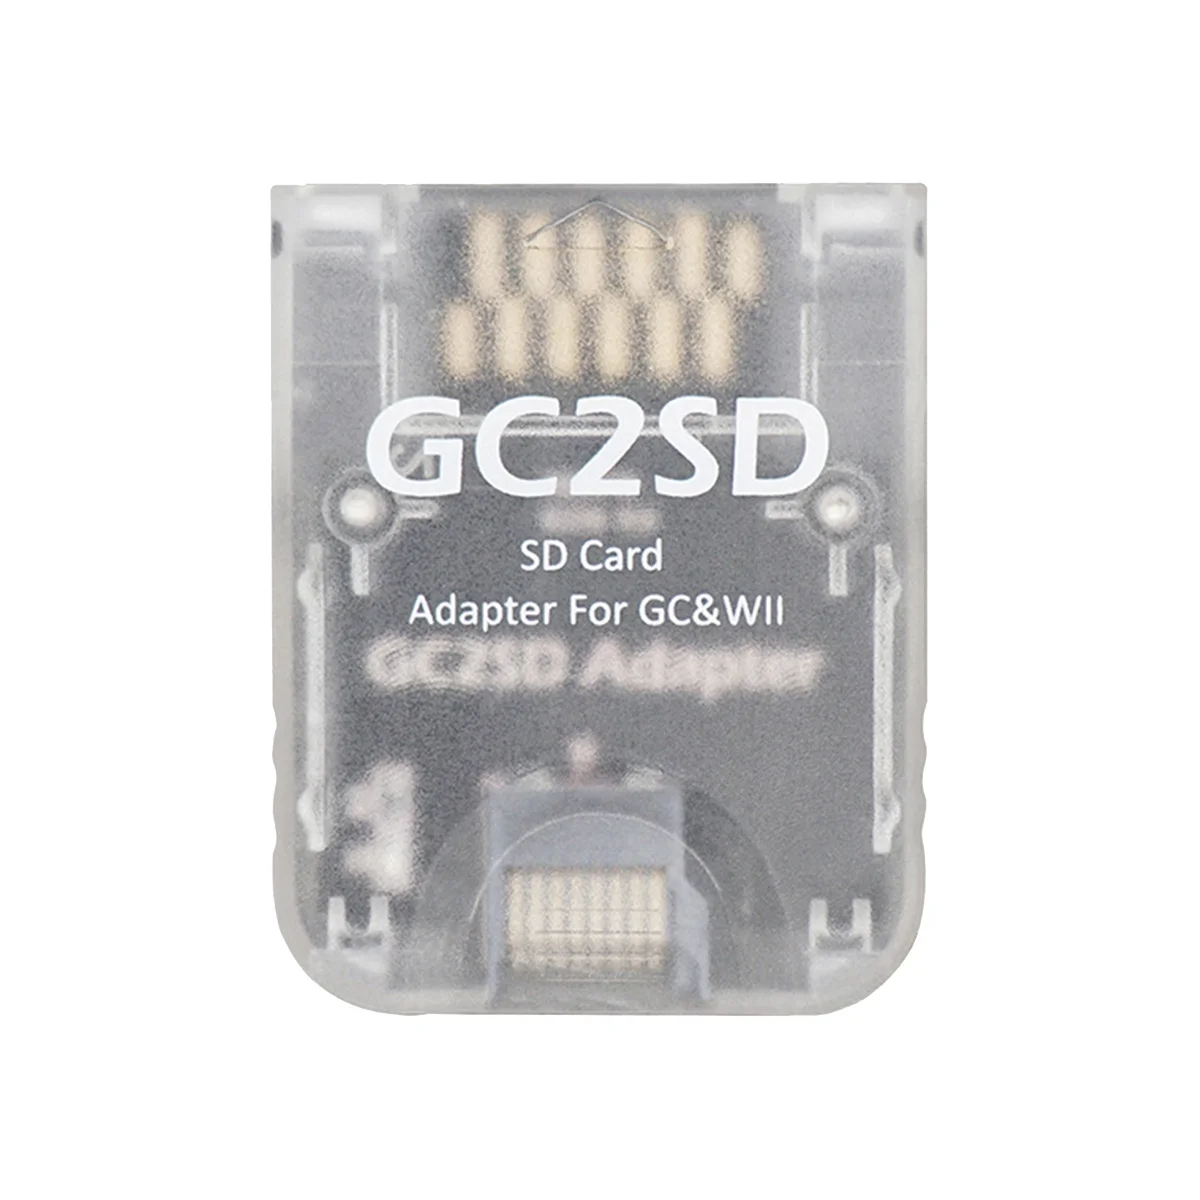 GC2SD อะแดปเตอร์ GC เป็น SD Card สำหรับ NGC GameCube Wii คอนโซลเกม (C)